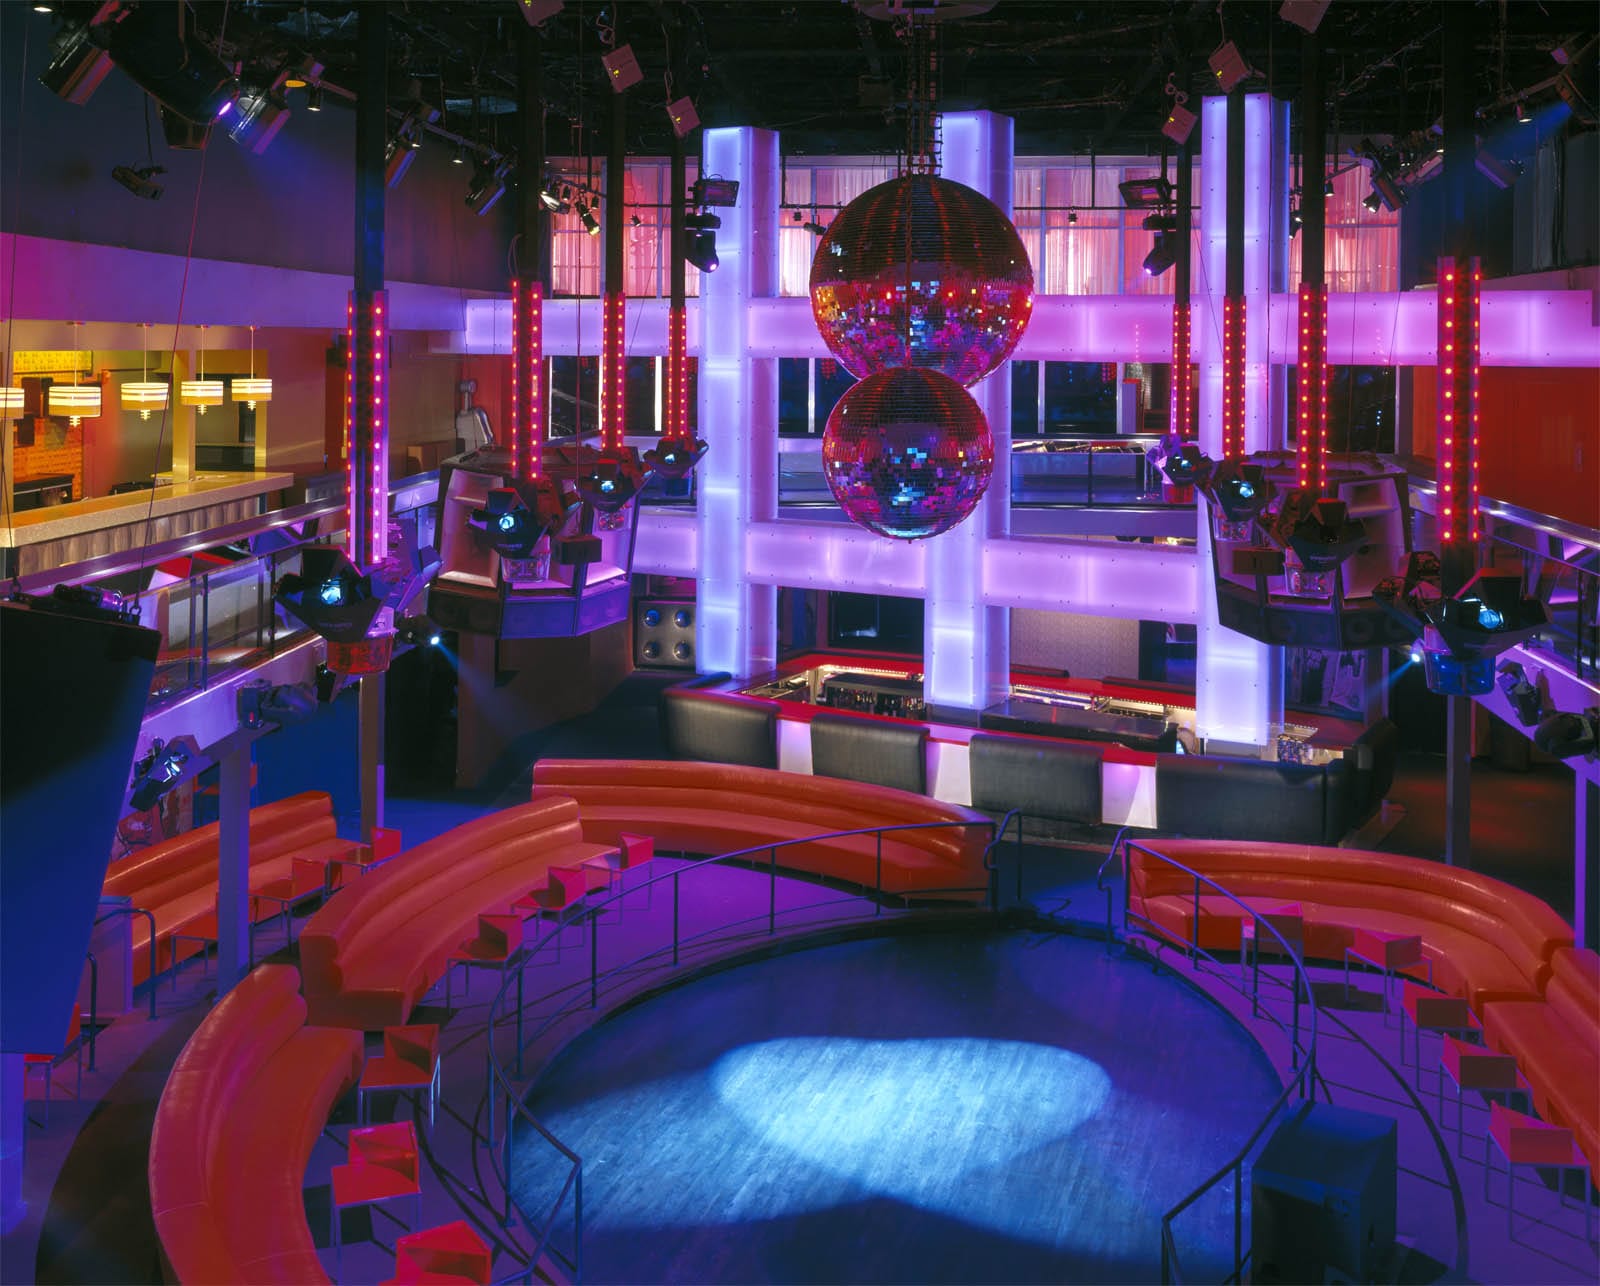 Cameo Nightclub - Hotel, Restaurant & Nightclub Design by ... restaurant schematic 